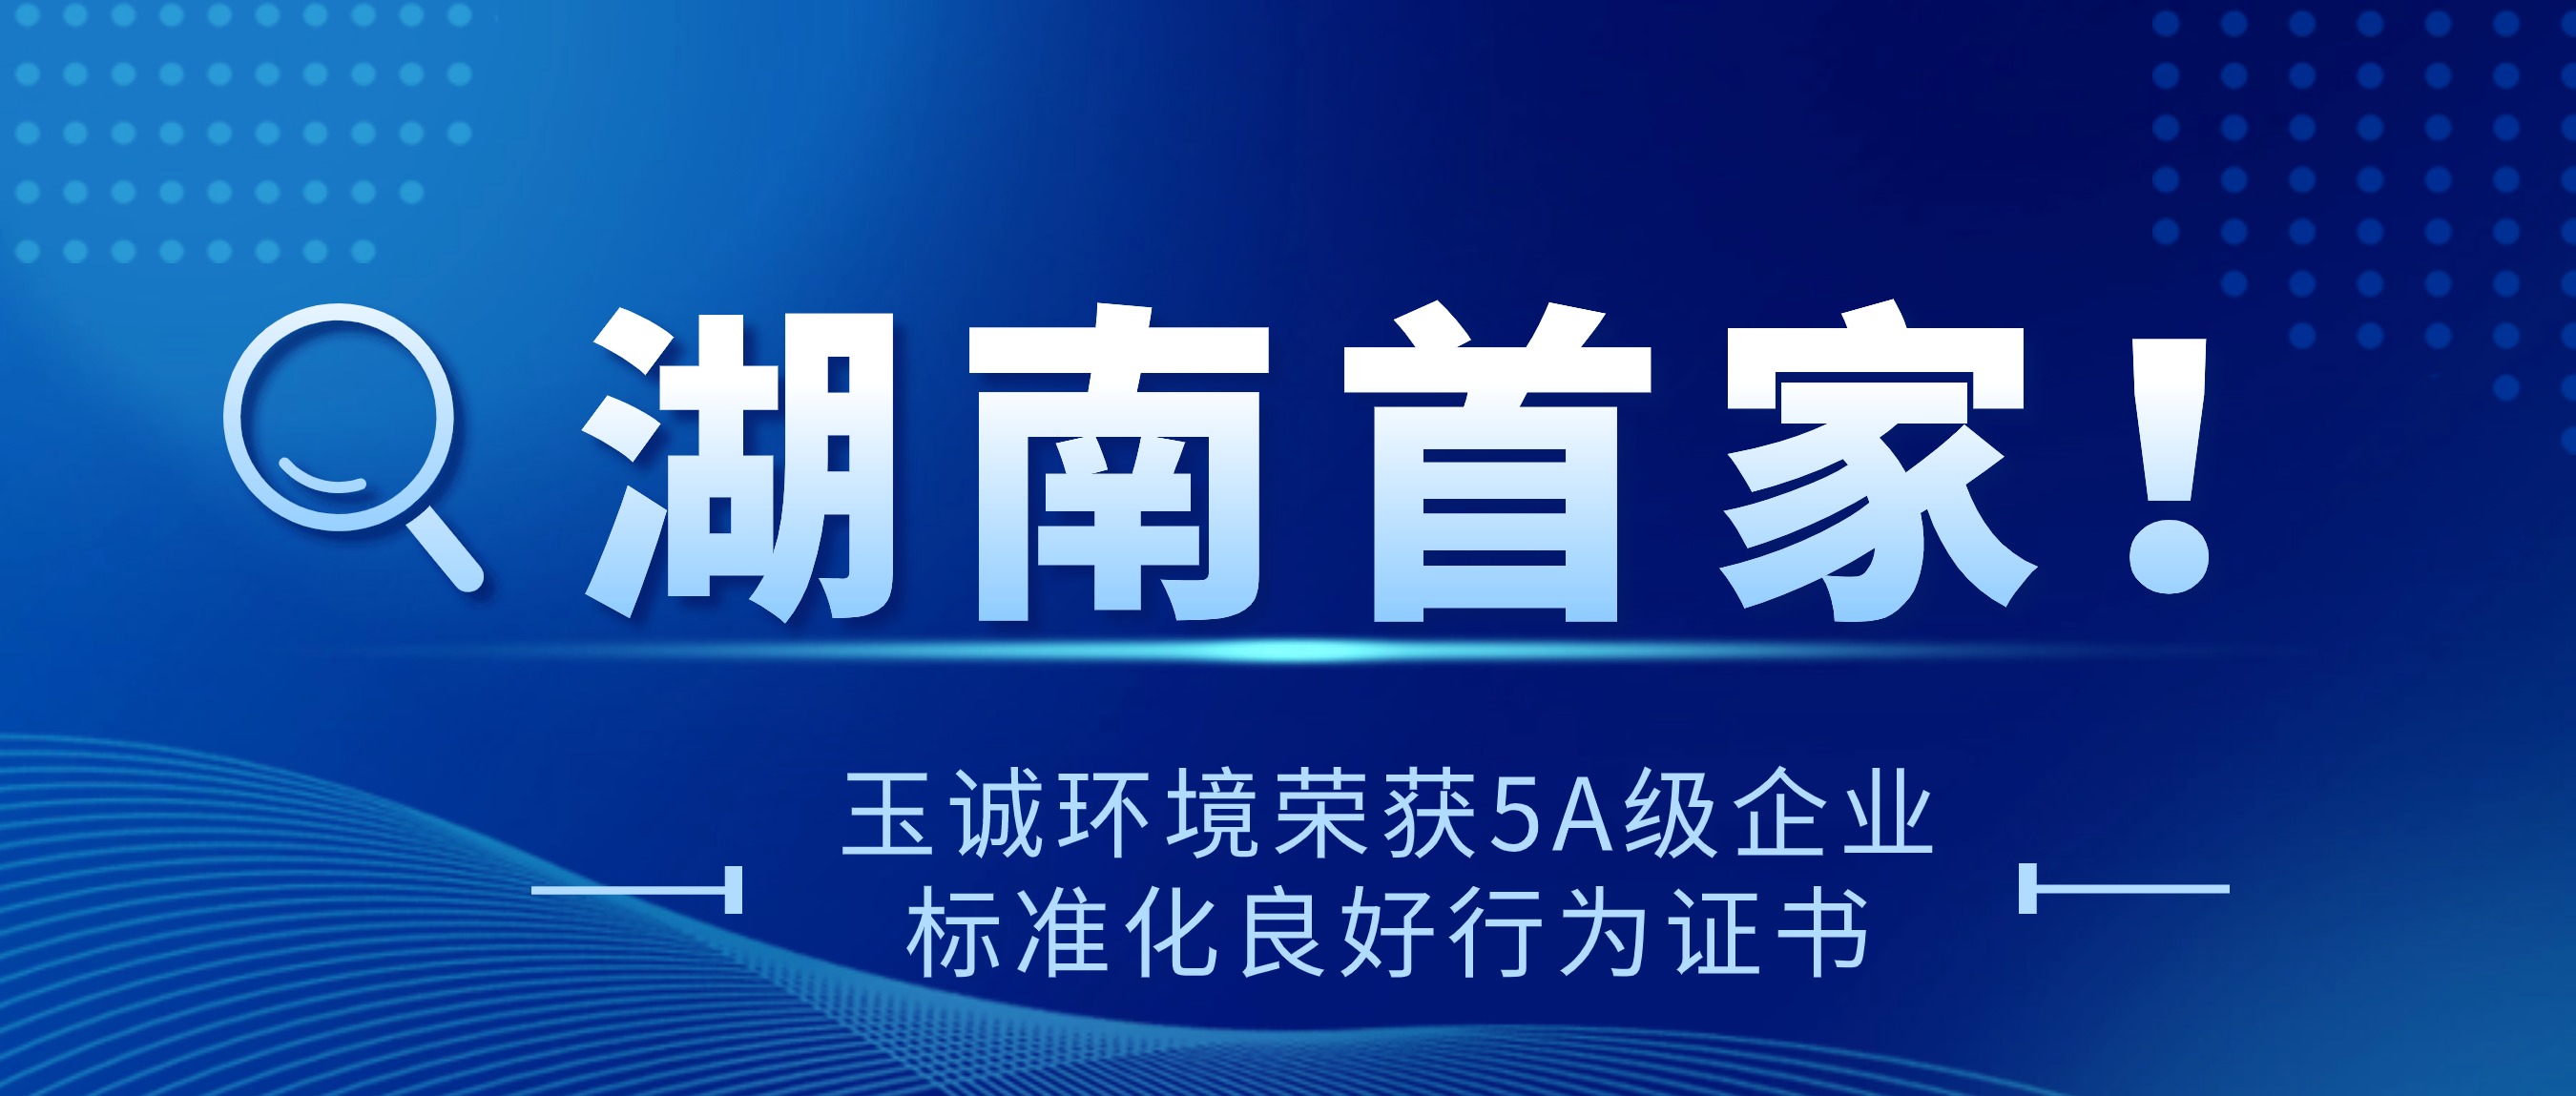 祝贺！玉诚环境荣获湖南首个5A级企业标准化良好行为证书